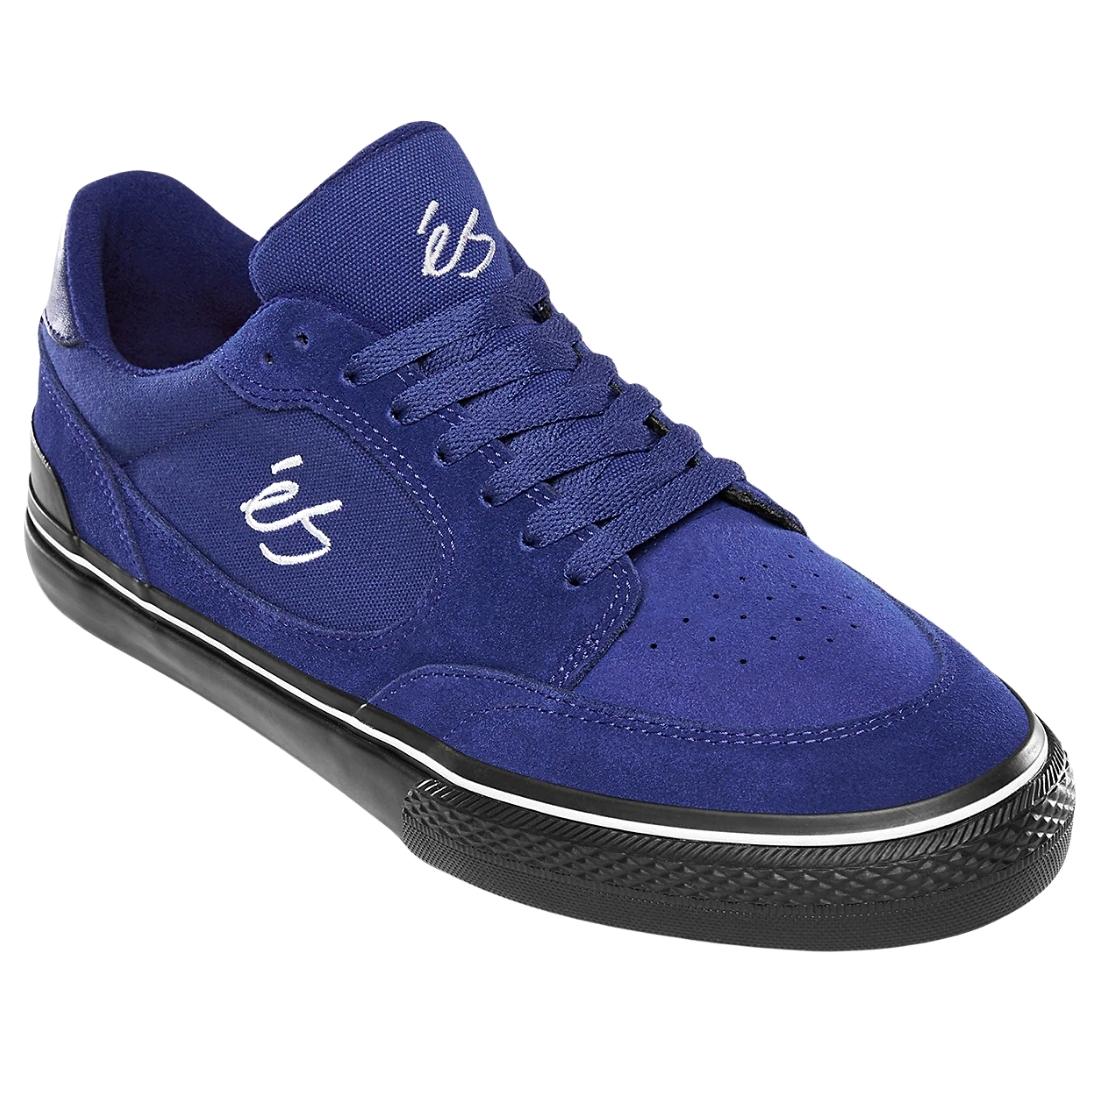 Es Caspian Skate Shoes - Blue/Black - Mens Skate Shoes by eS